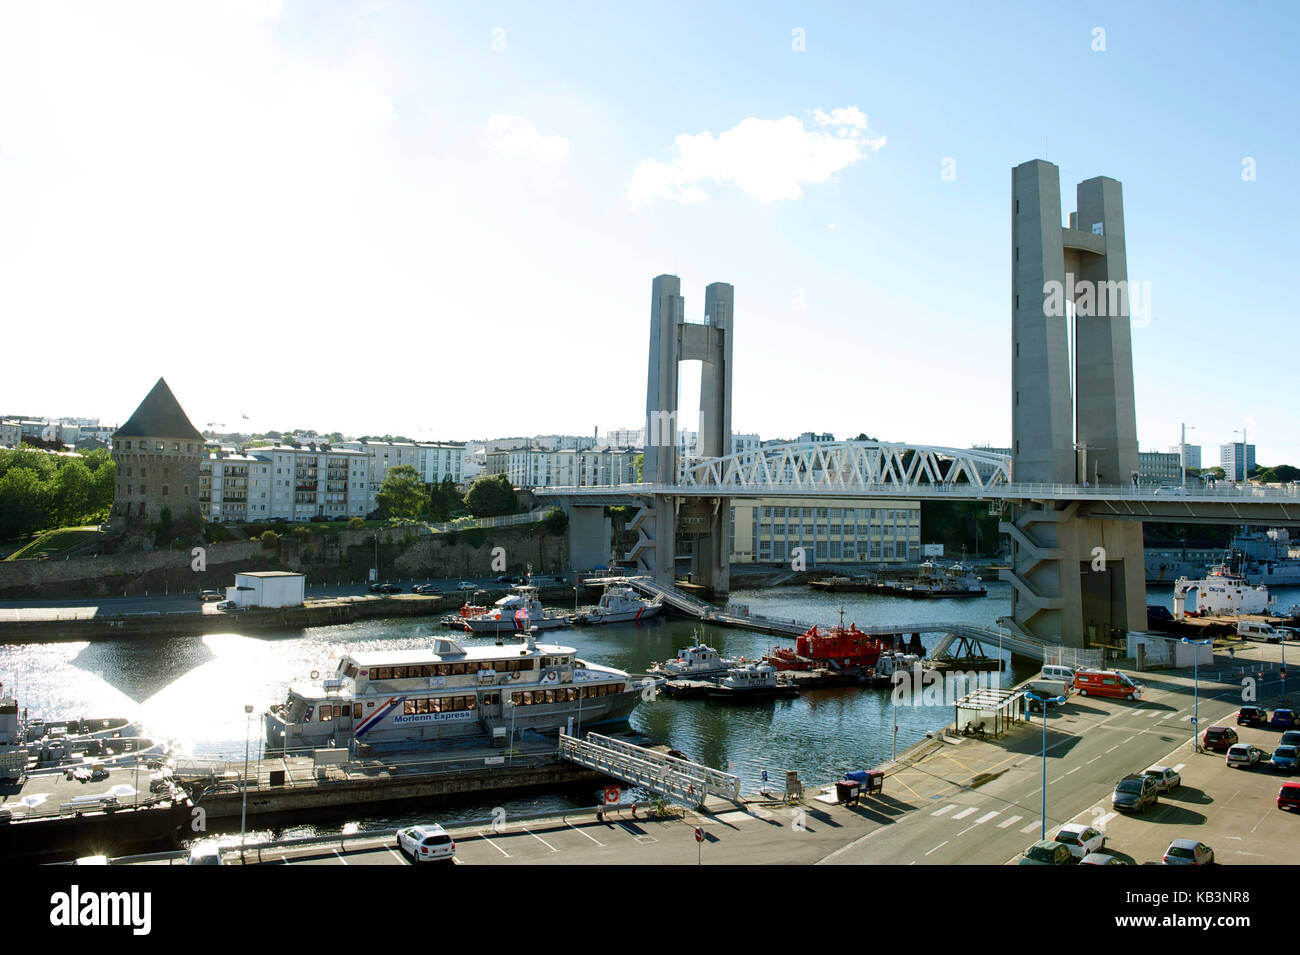 Francia, Finisterre, Brest, tanguy tower y el puente recouvrance domina la penfeld y buques de guerra en el arsenal Foto de stock